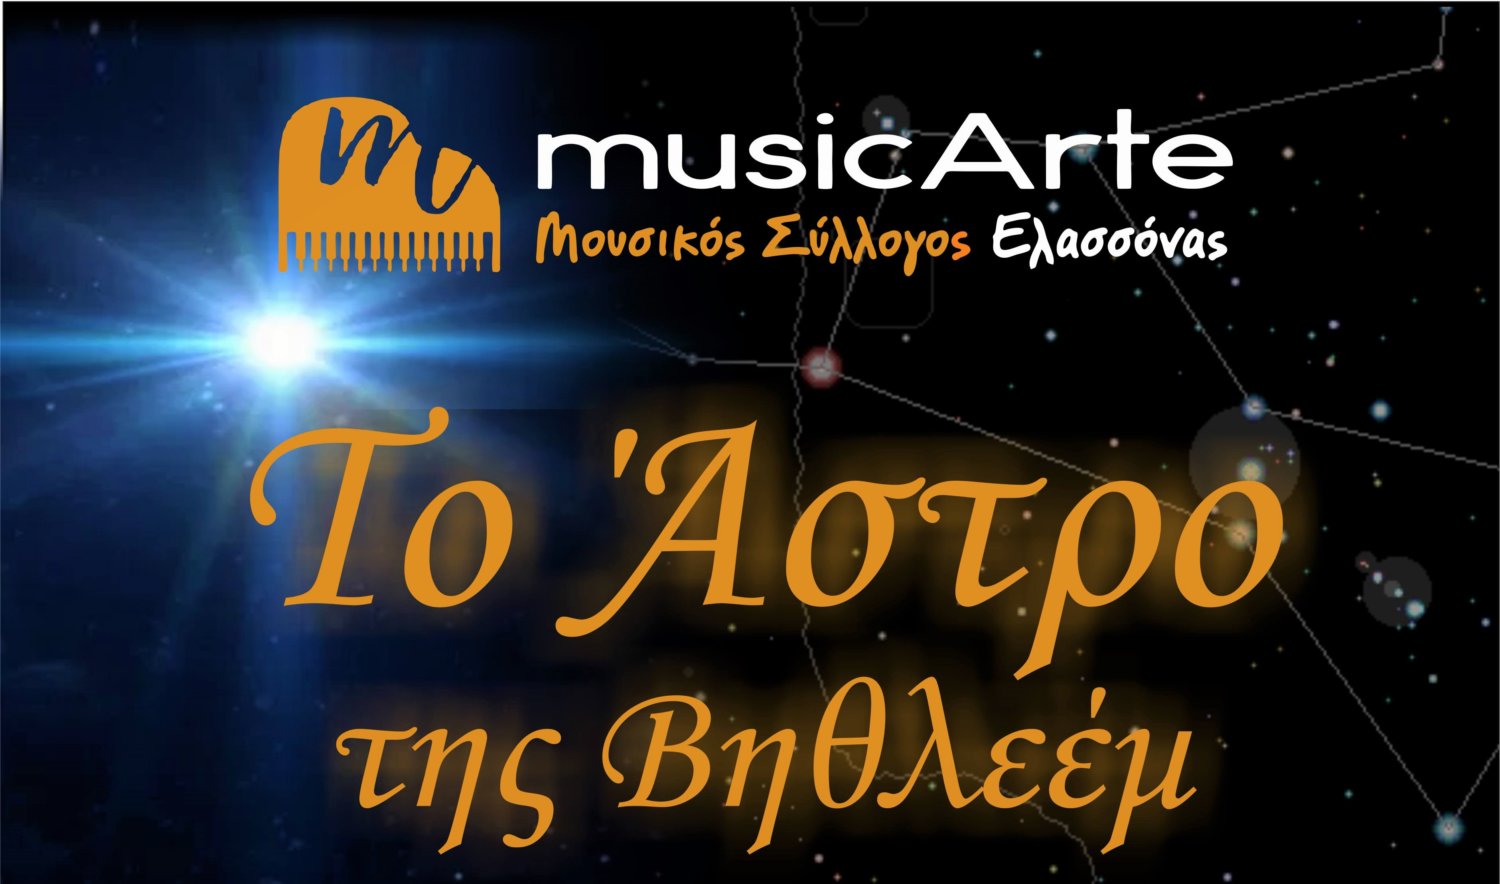 Εκδήλωση για «Το Άστρο της Βηθλεέμ» από τον Μουσικό Σύλλογο Ελασσόνας «musicArte»